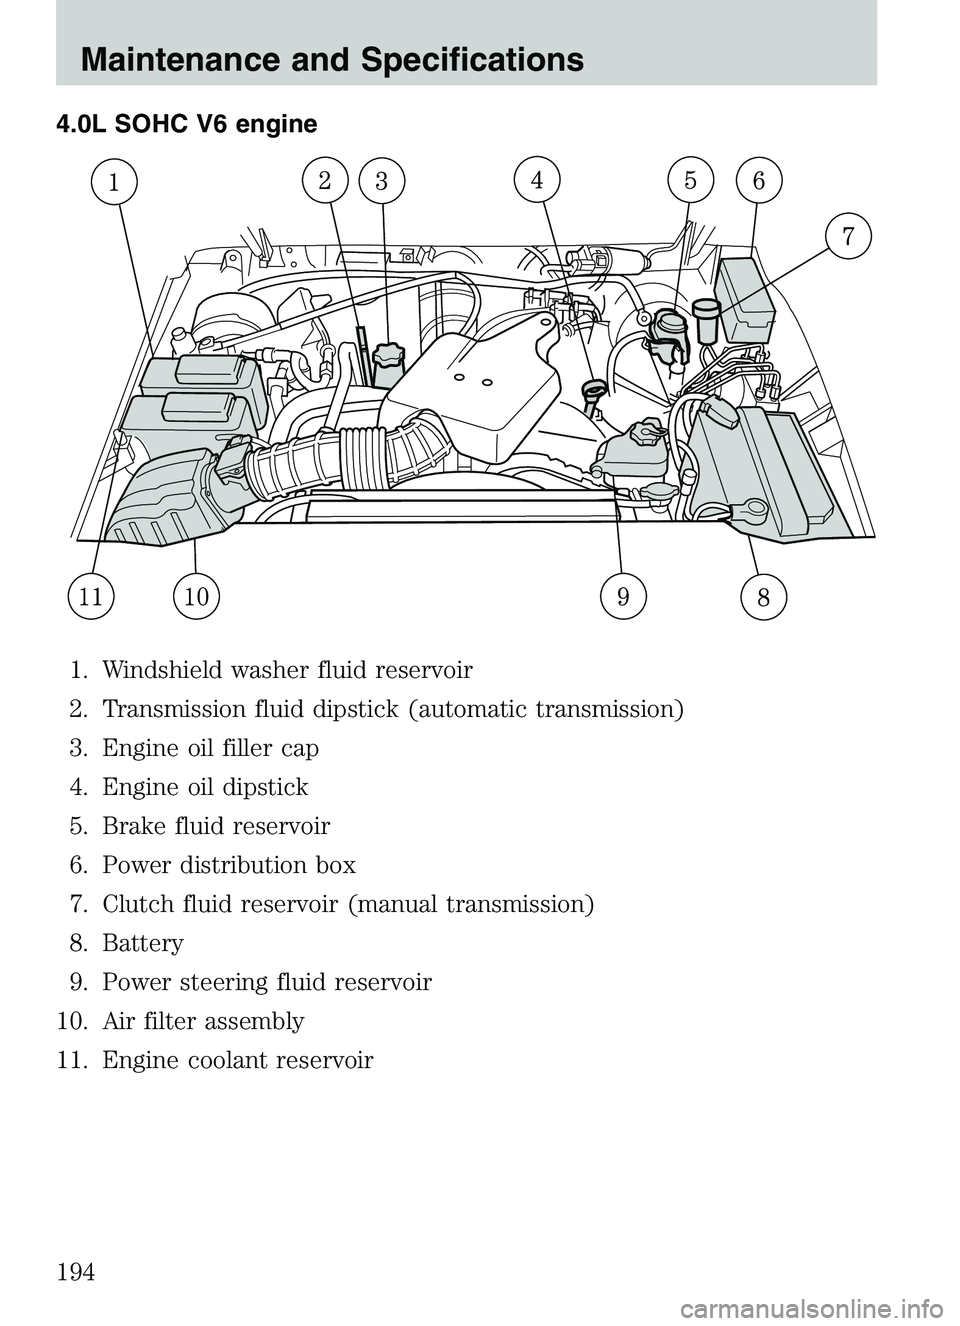 MAZDA MODEL B4000 2003  Owners Manual 4.0L SOHC V6 engine1. Windshield washer fluid reservoir
2. Transmission fluid dipstick (automatic transmission)
3. Engine oil filler cap
4. Engine oil dipstick
5. Brake fluid reservoir
6. Power distri